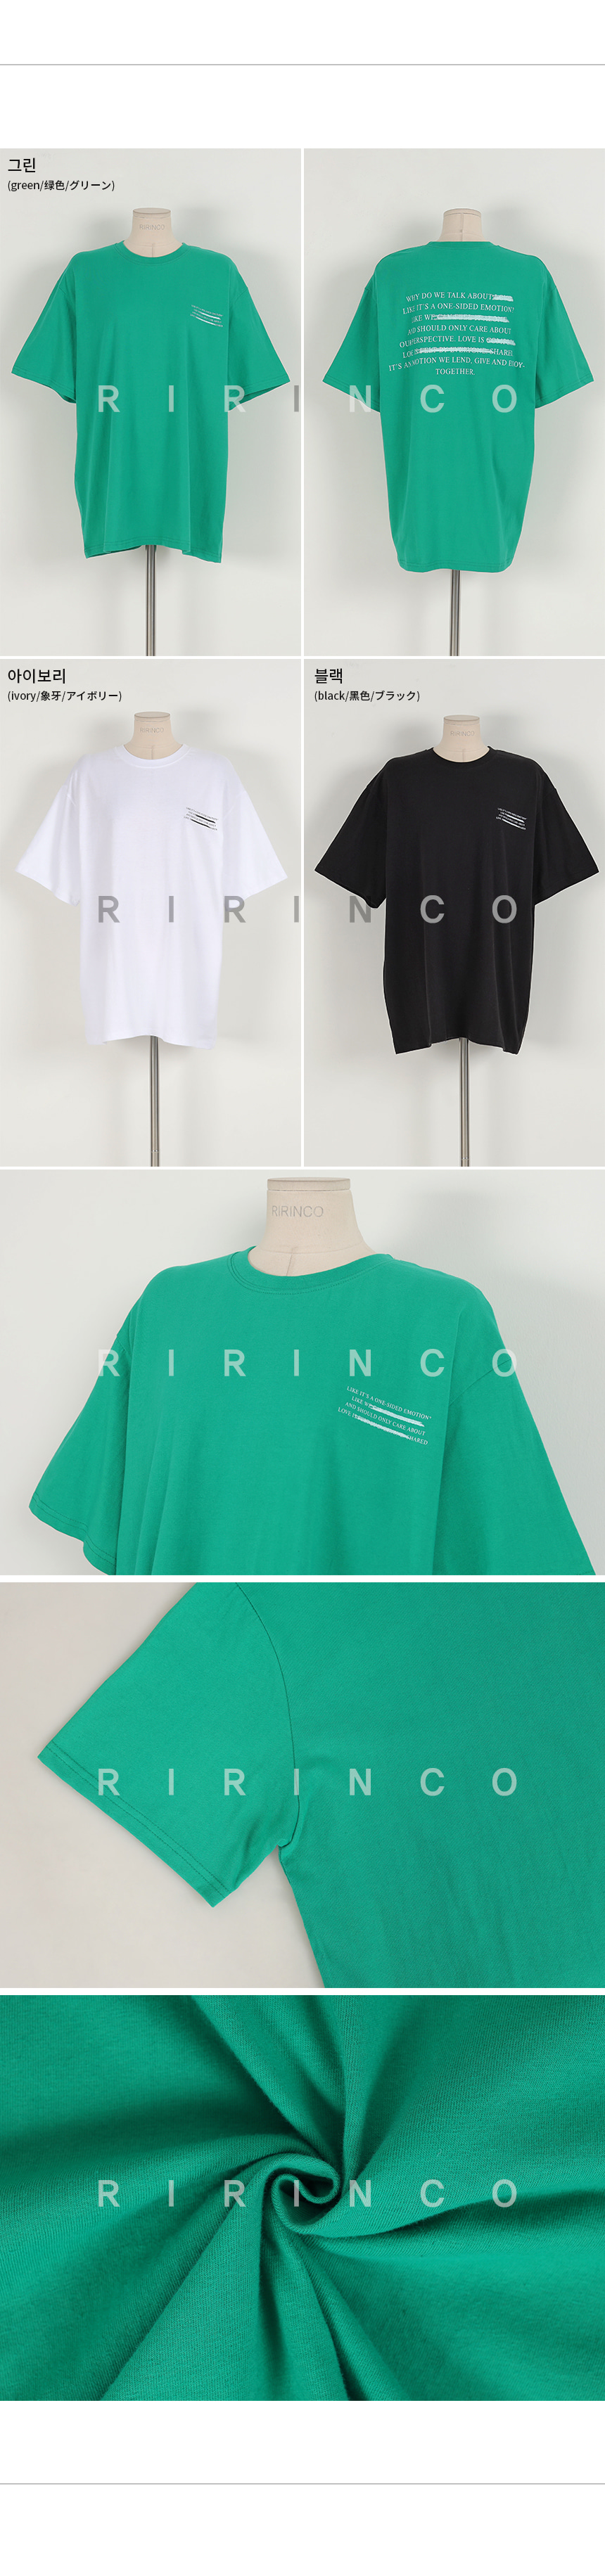 RIRINCO 英文ロゴプリントボックスフィットTシャツ